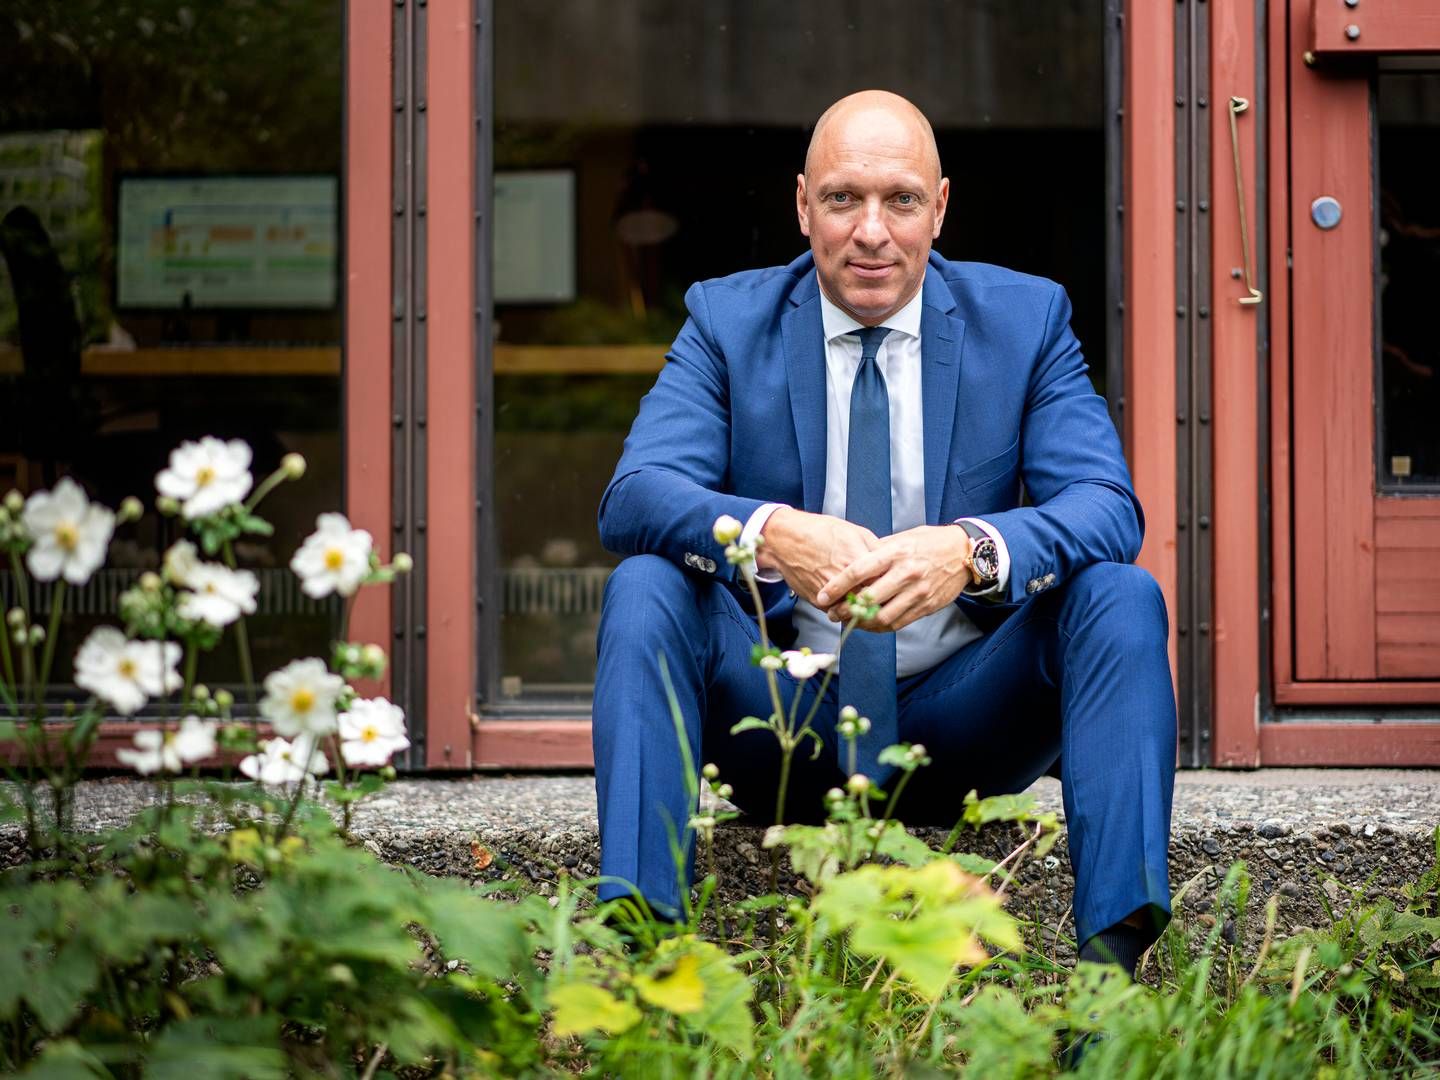 Peter Hermann er adm. direktør for Topdanmark, der er landets tredjestørste forsikringsselskab. | Photo: Stine Bidstrup/Ritzau Scanpix